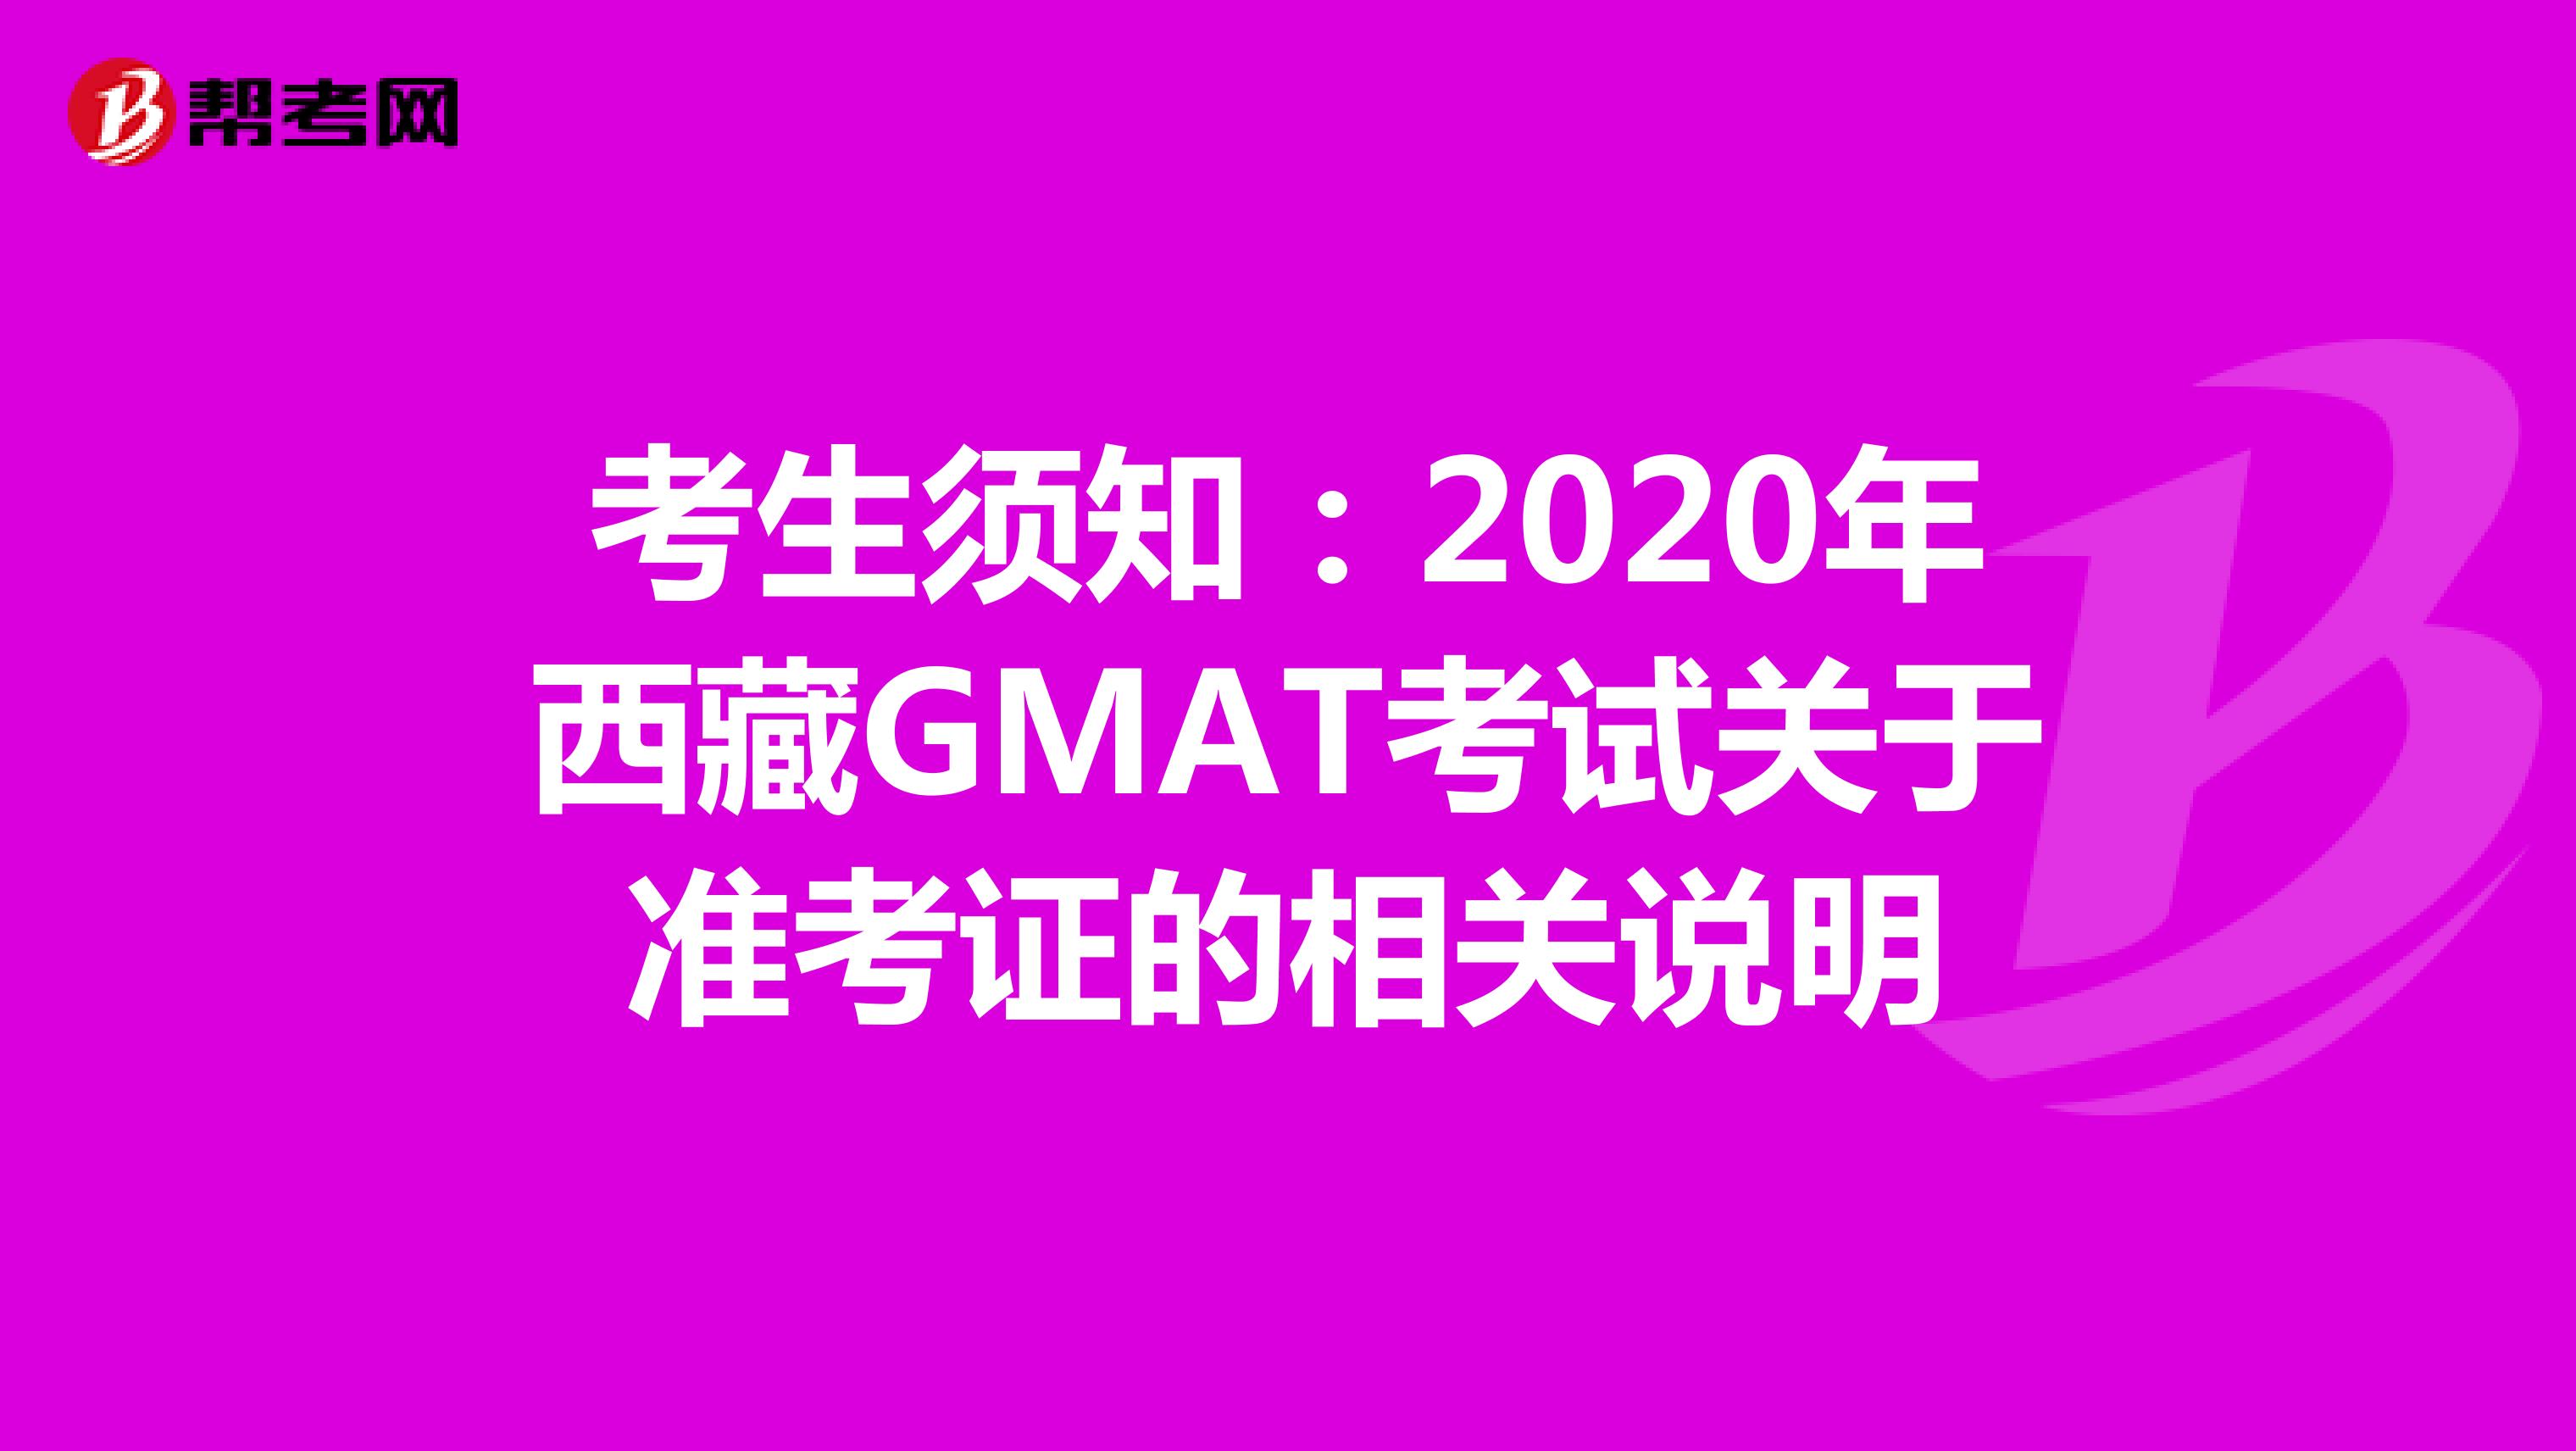 考生须知：2020年西藏GMAT考试关于准考证的相关说明